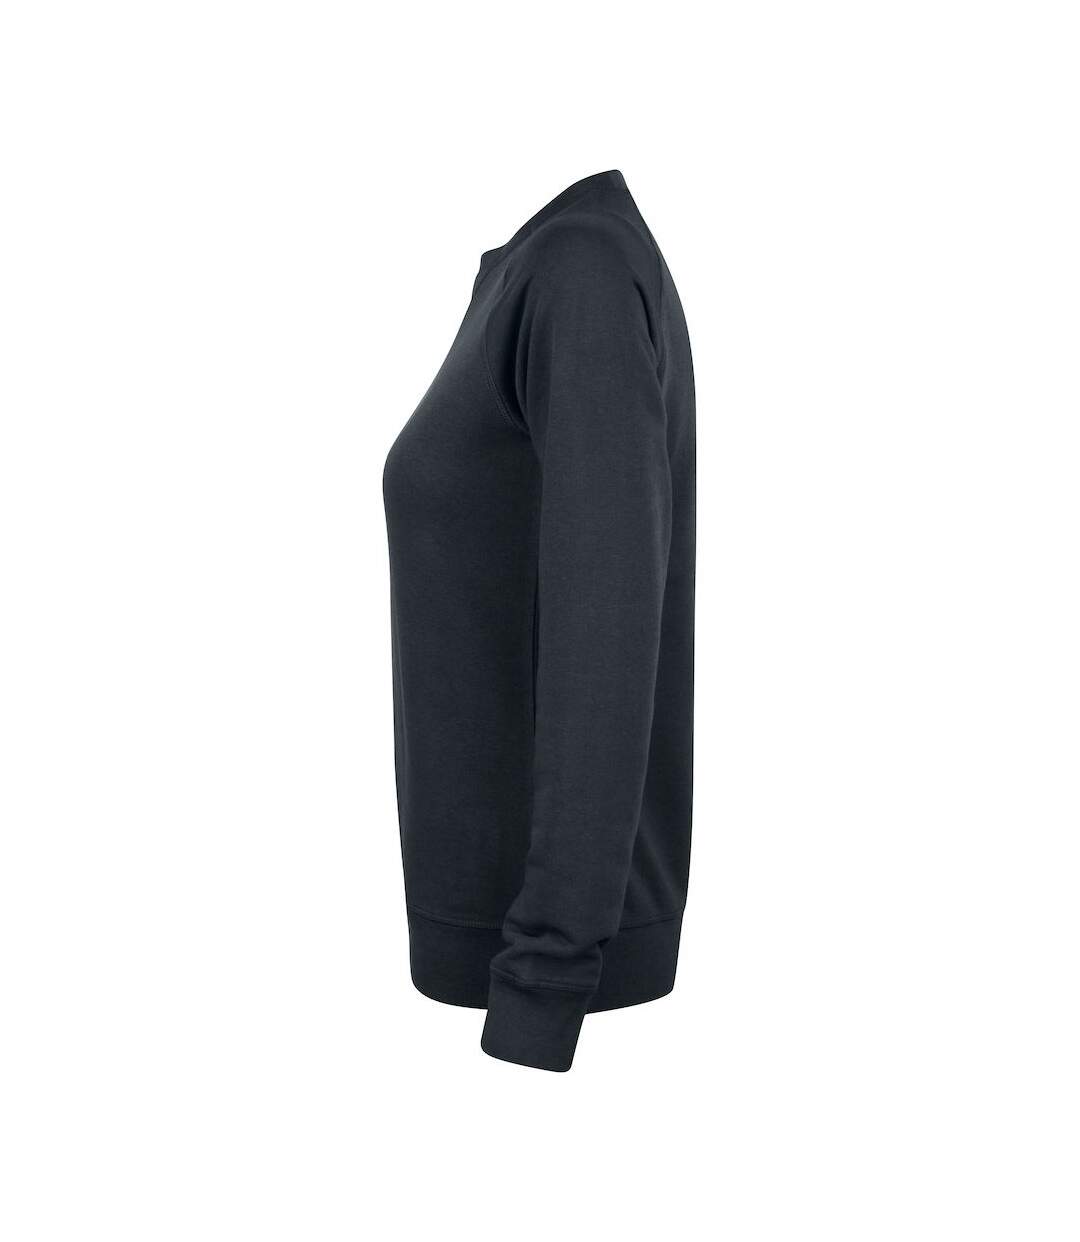 Clique Womens/Ladies Premium Round Neck Sweatshirt (Black)